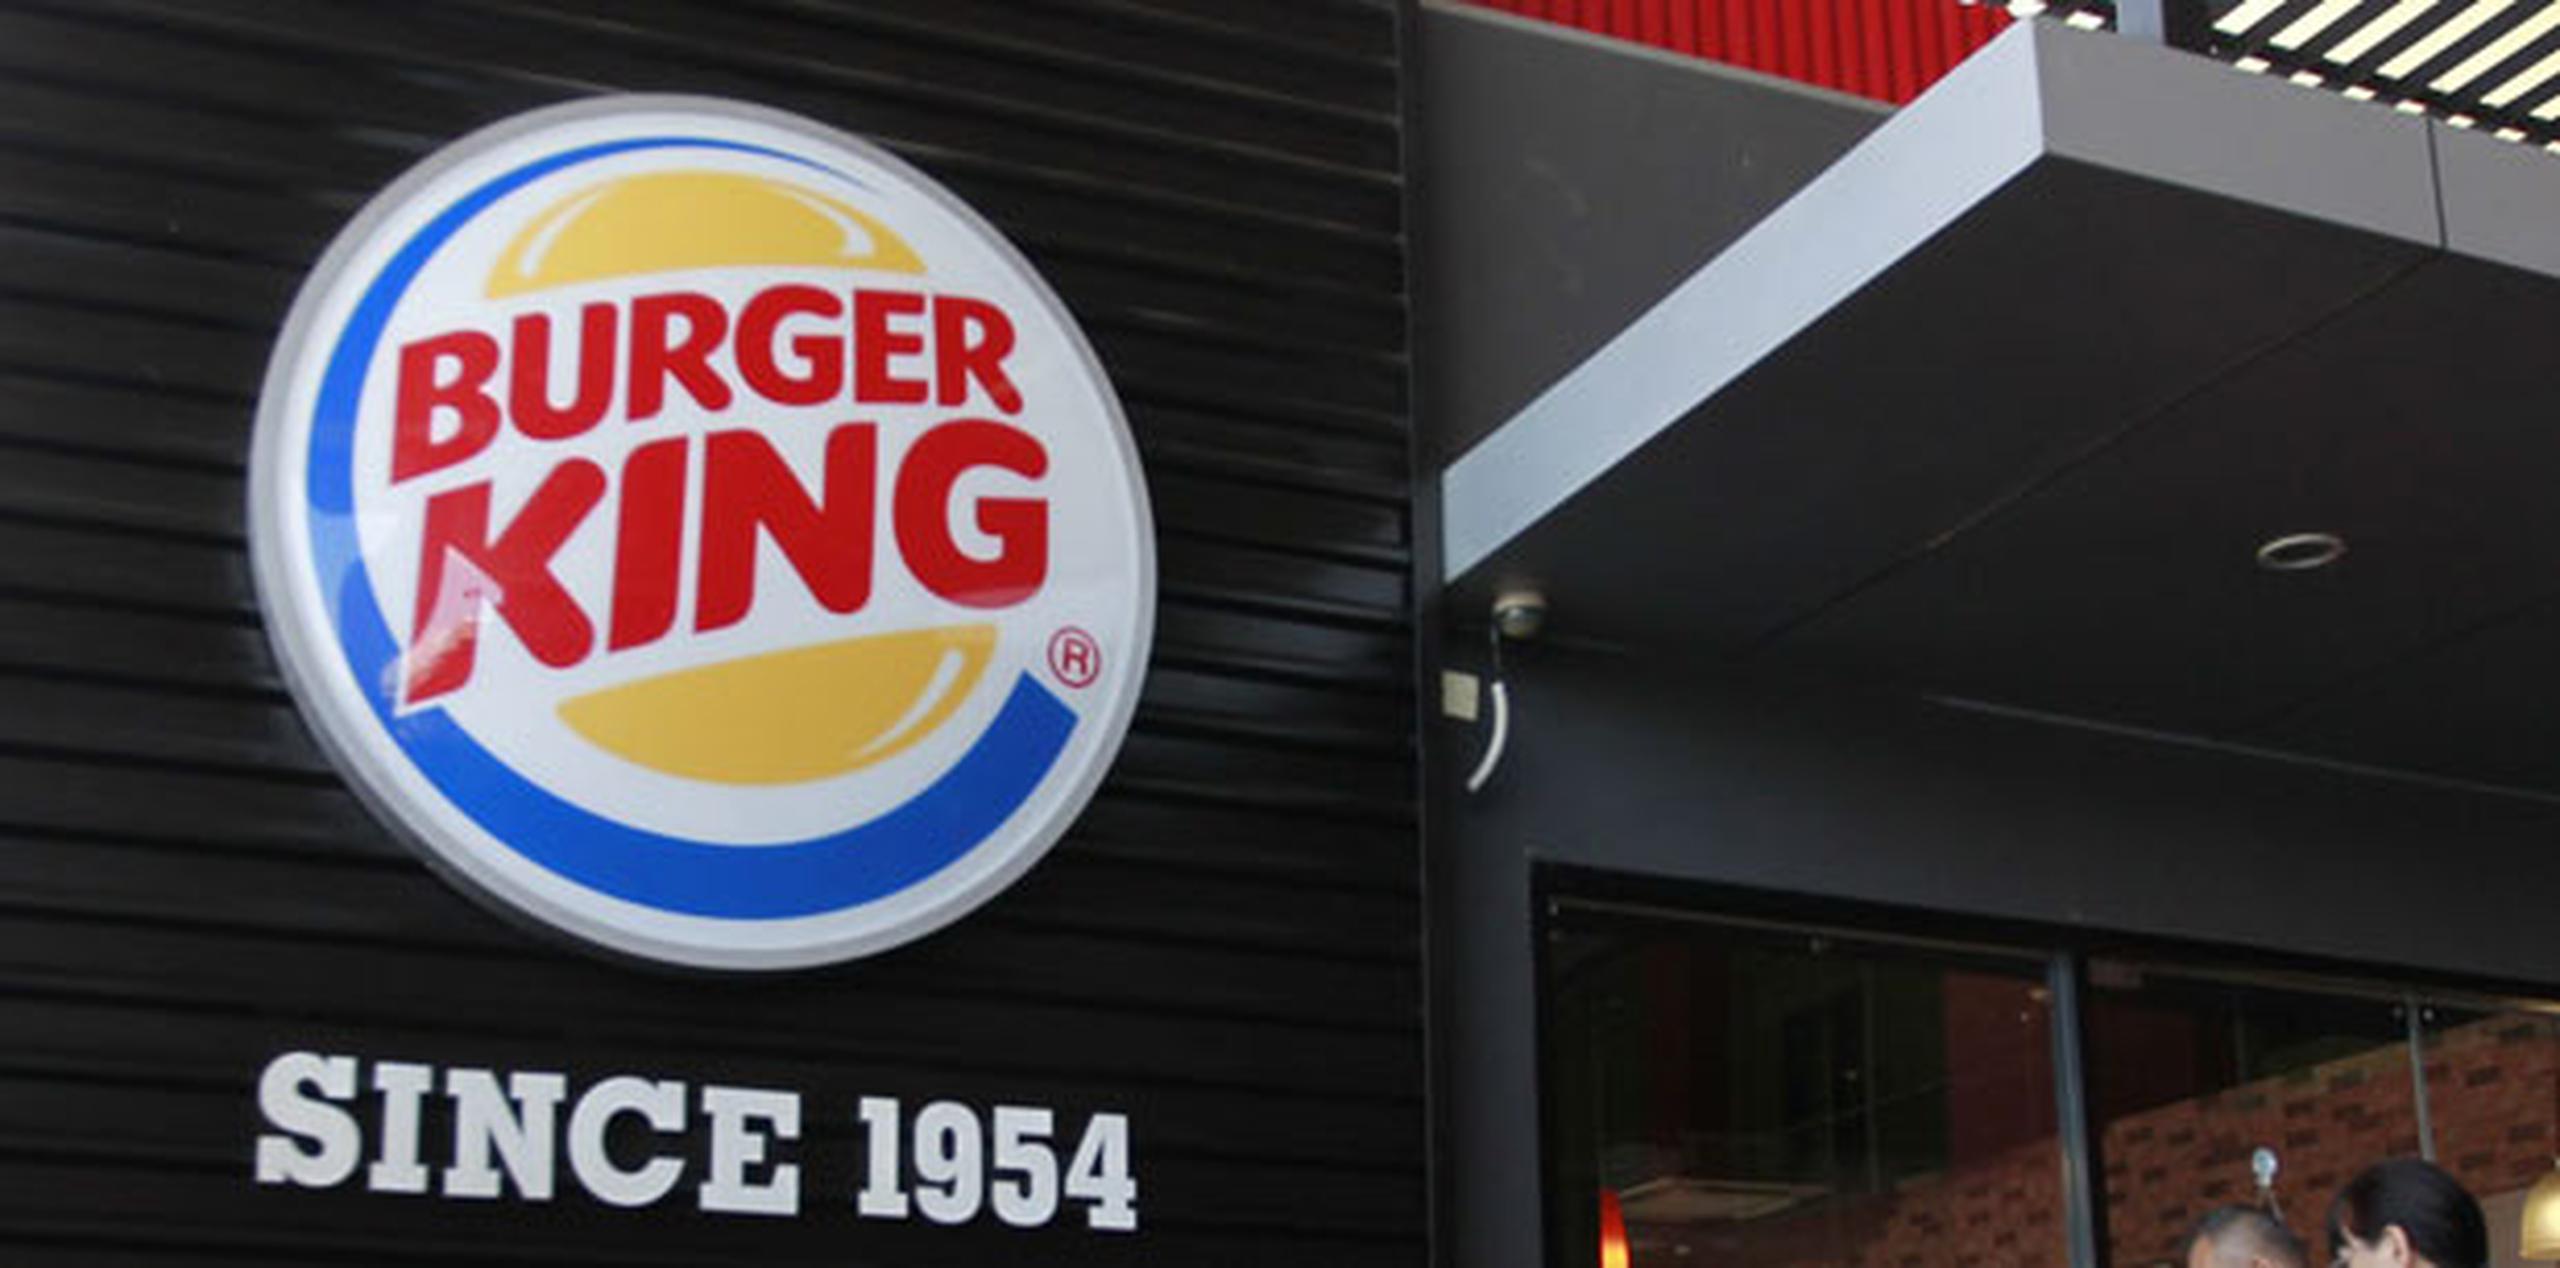 Hay más de 654 restaurantes de Burger King en el Reino Unido. (Archivo)